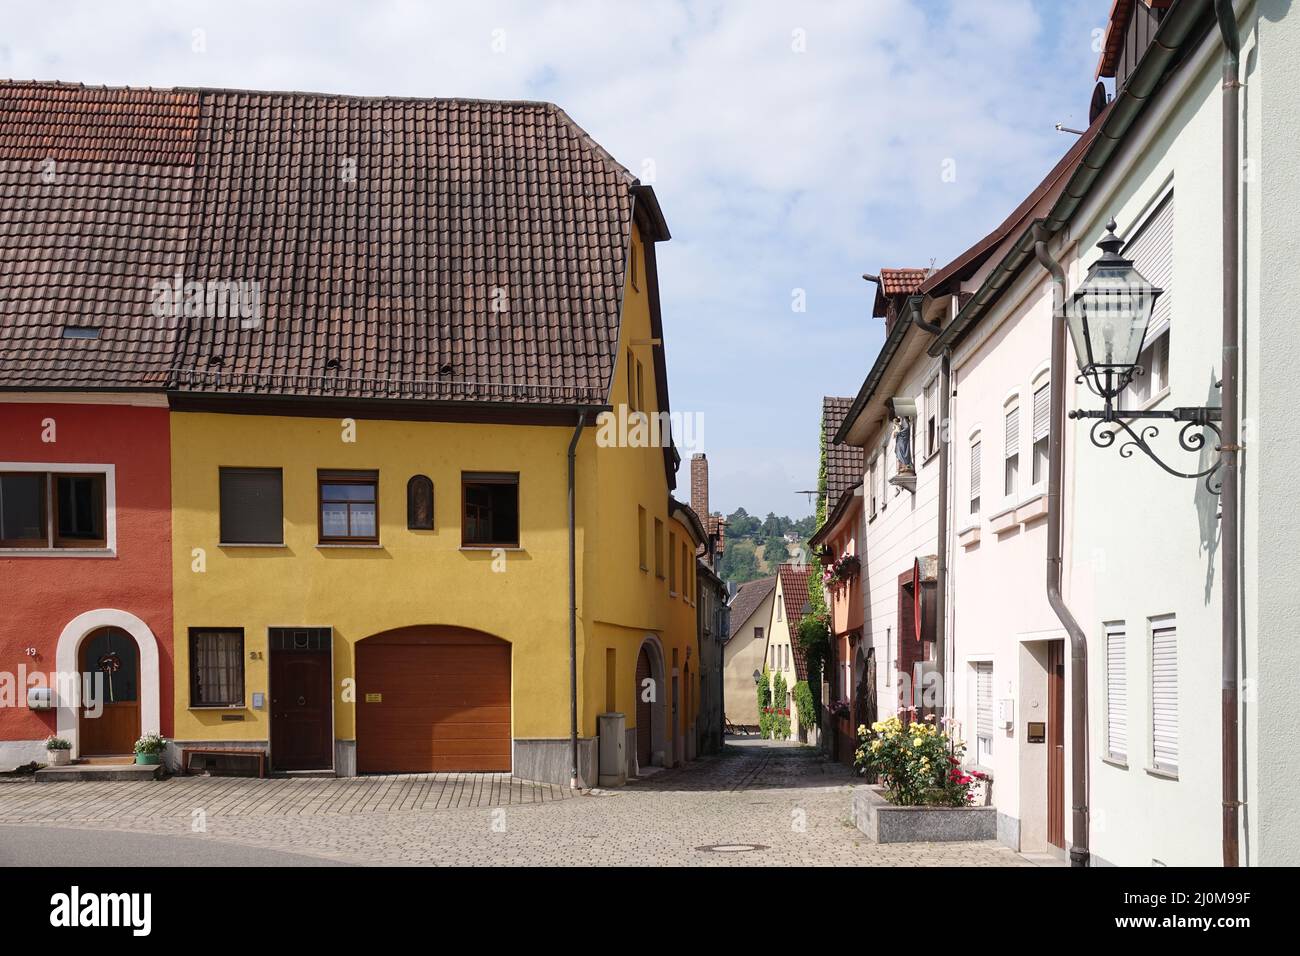 Houses in Eibelstadt Stock Photo